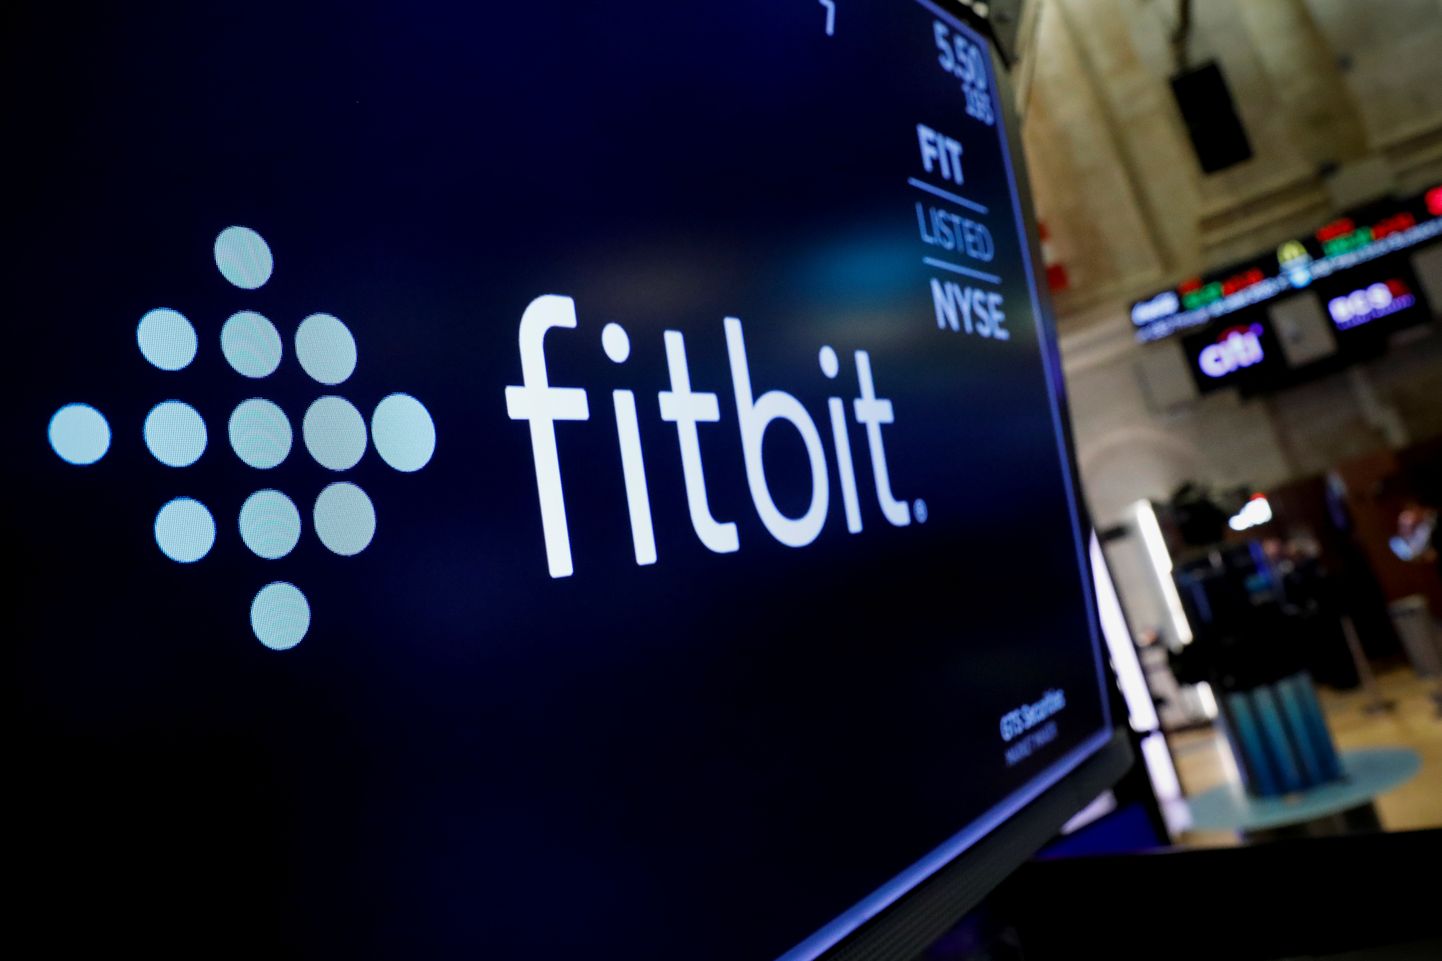 Inimese aktiivsust jälgivaid seadmeid tootva Fitbiti logo.